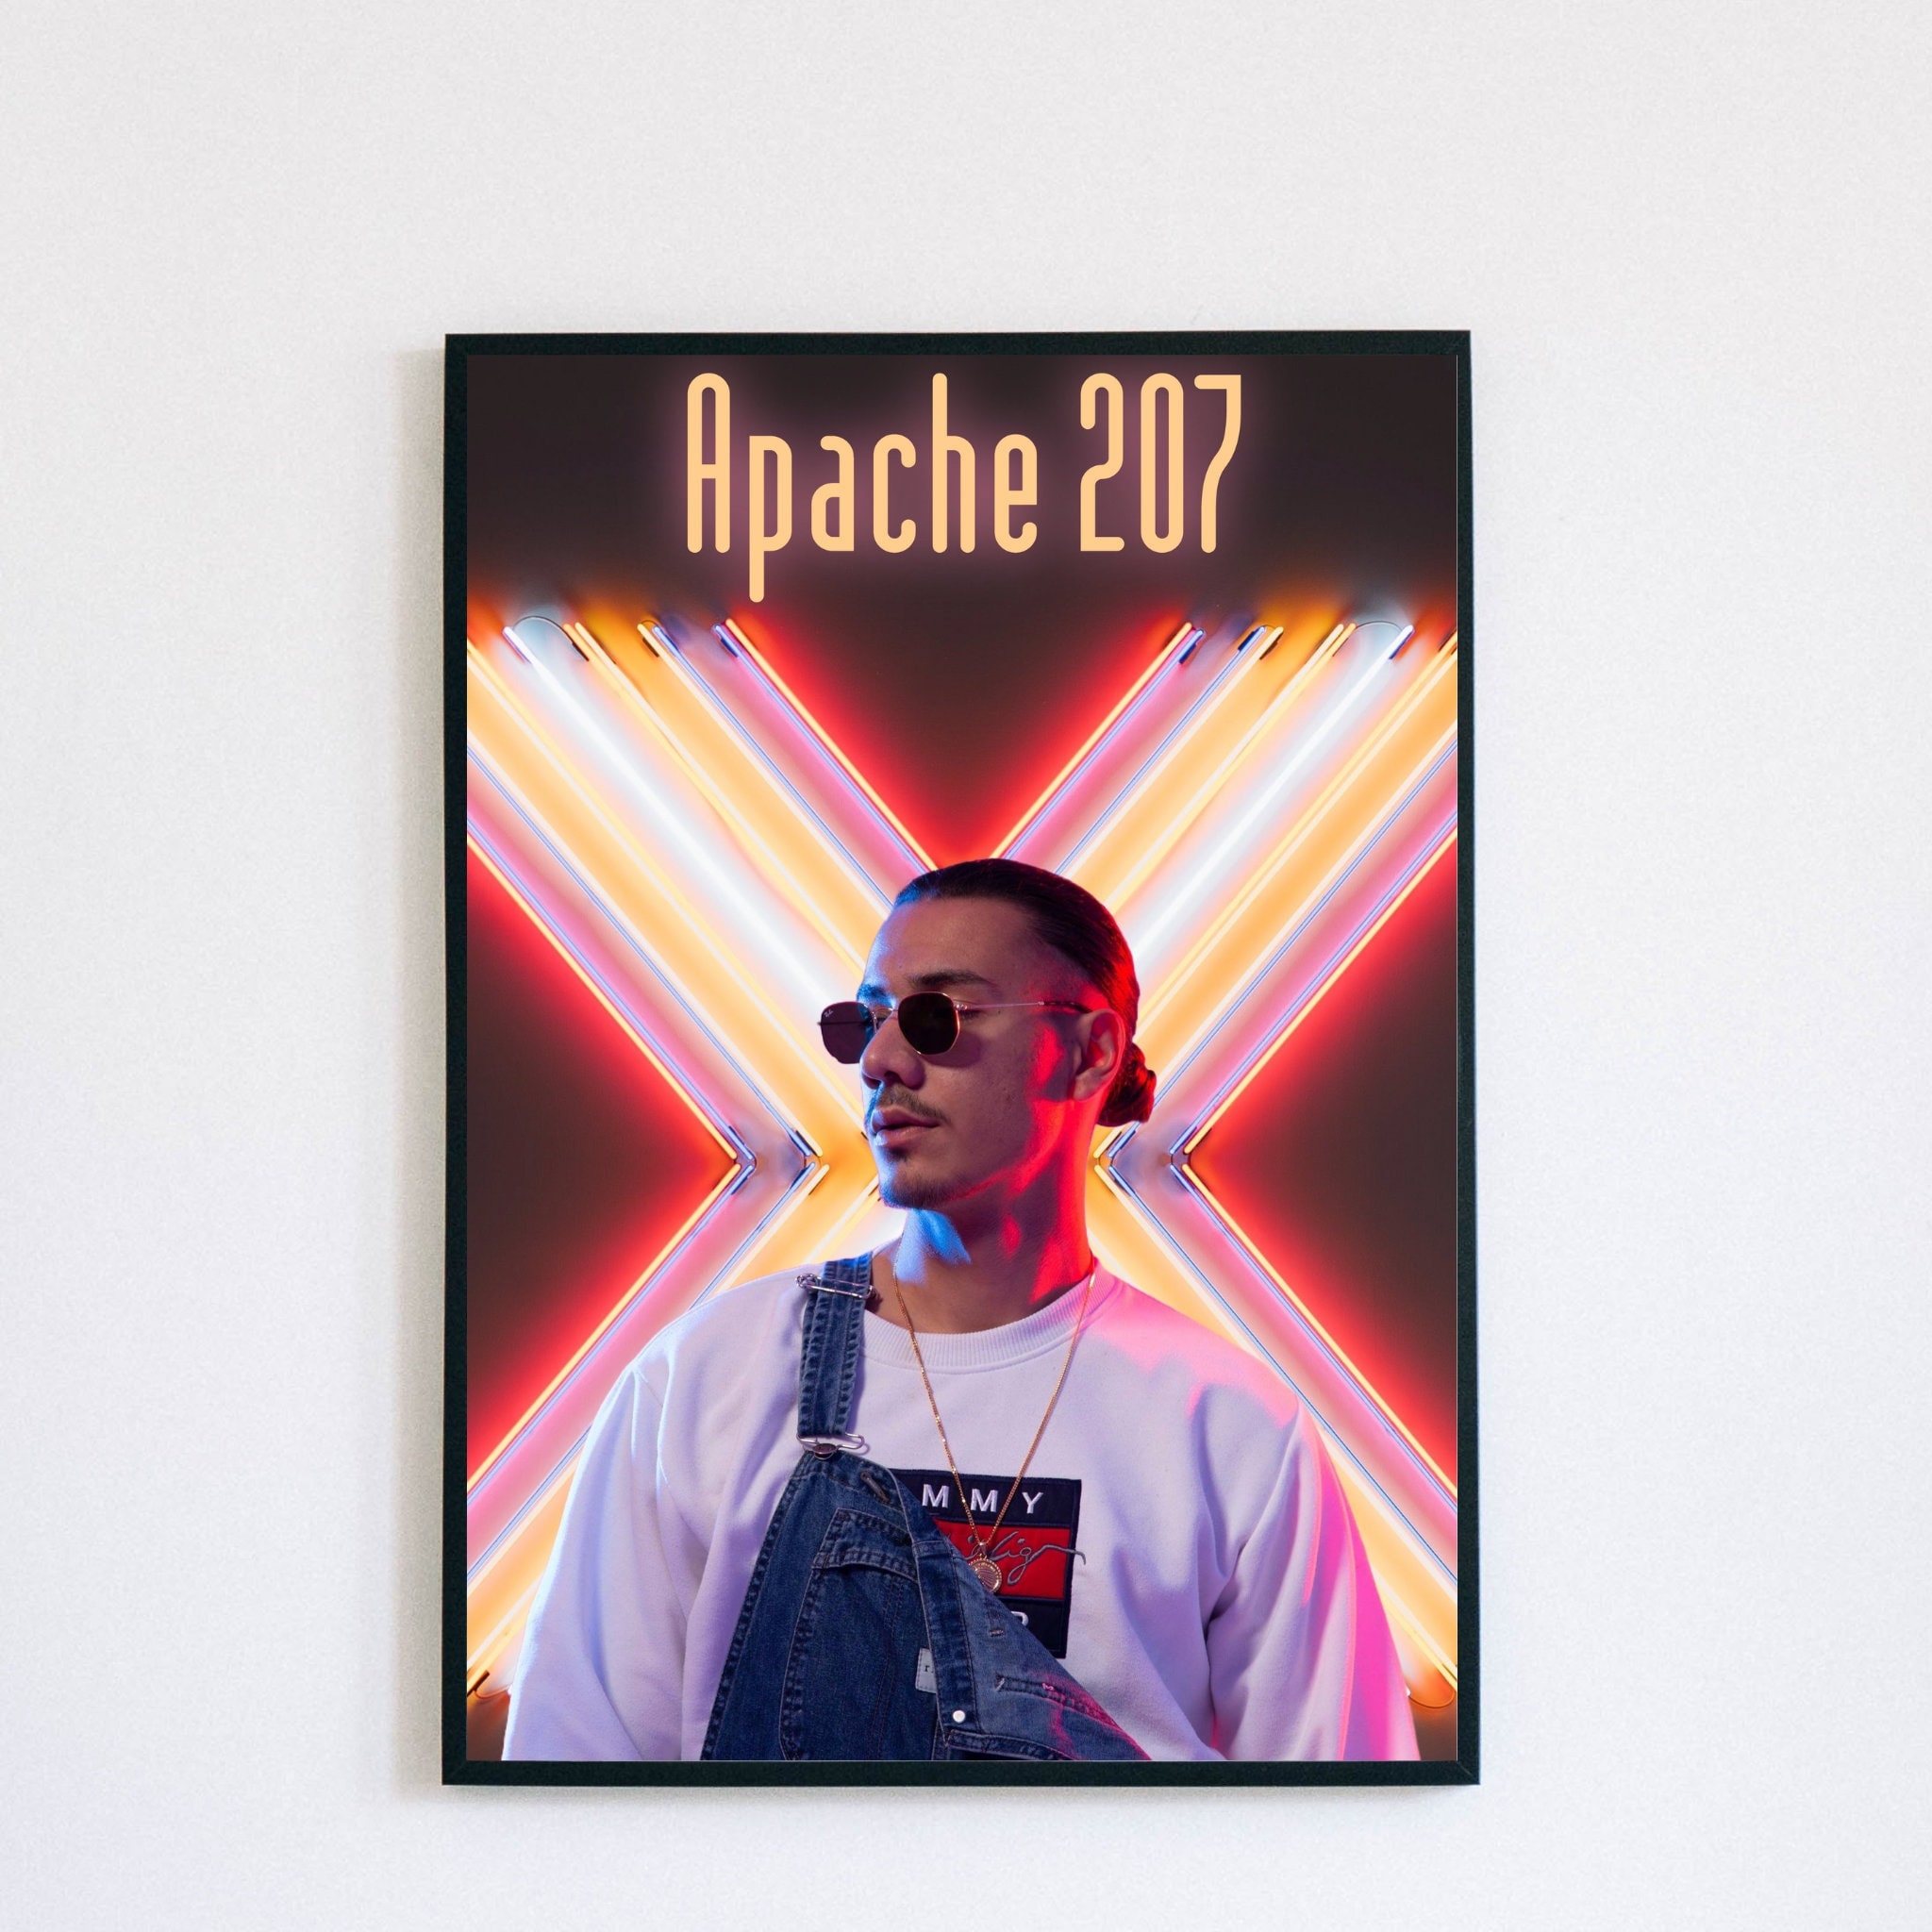 Apache 207 Rap' Sticker